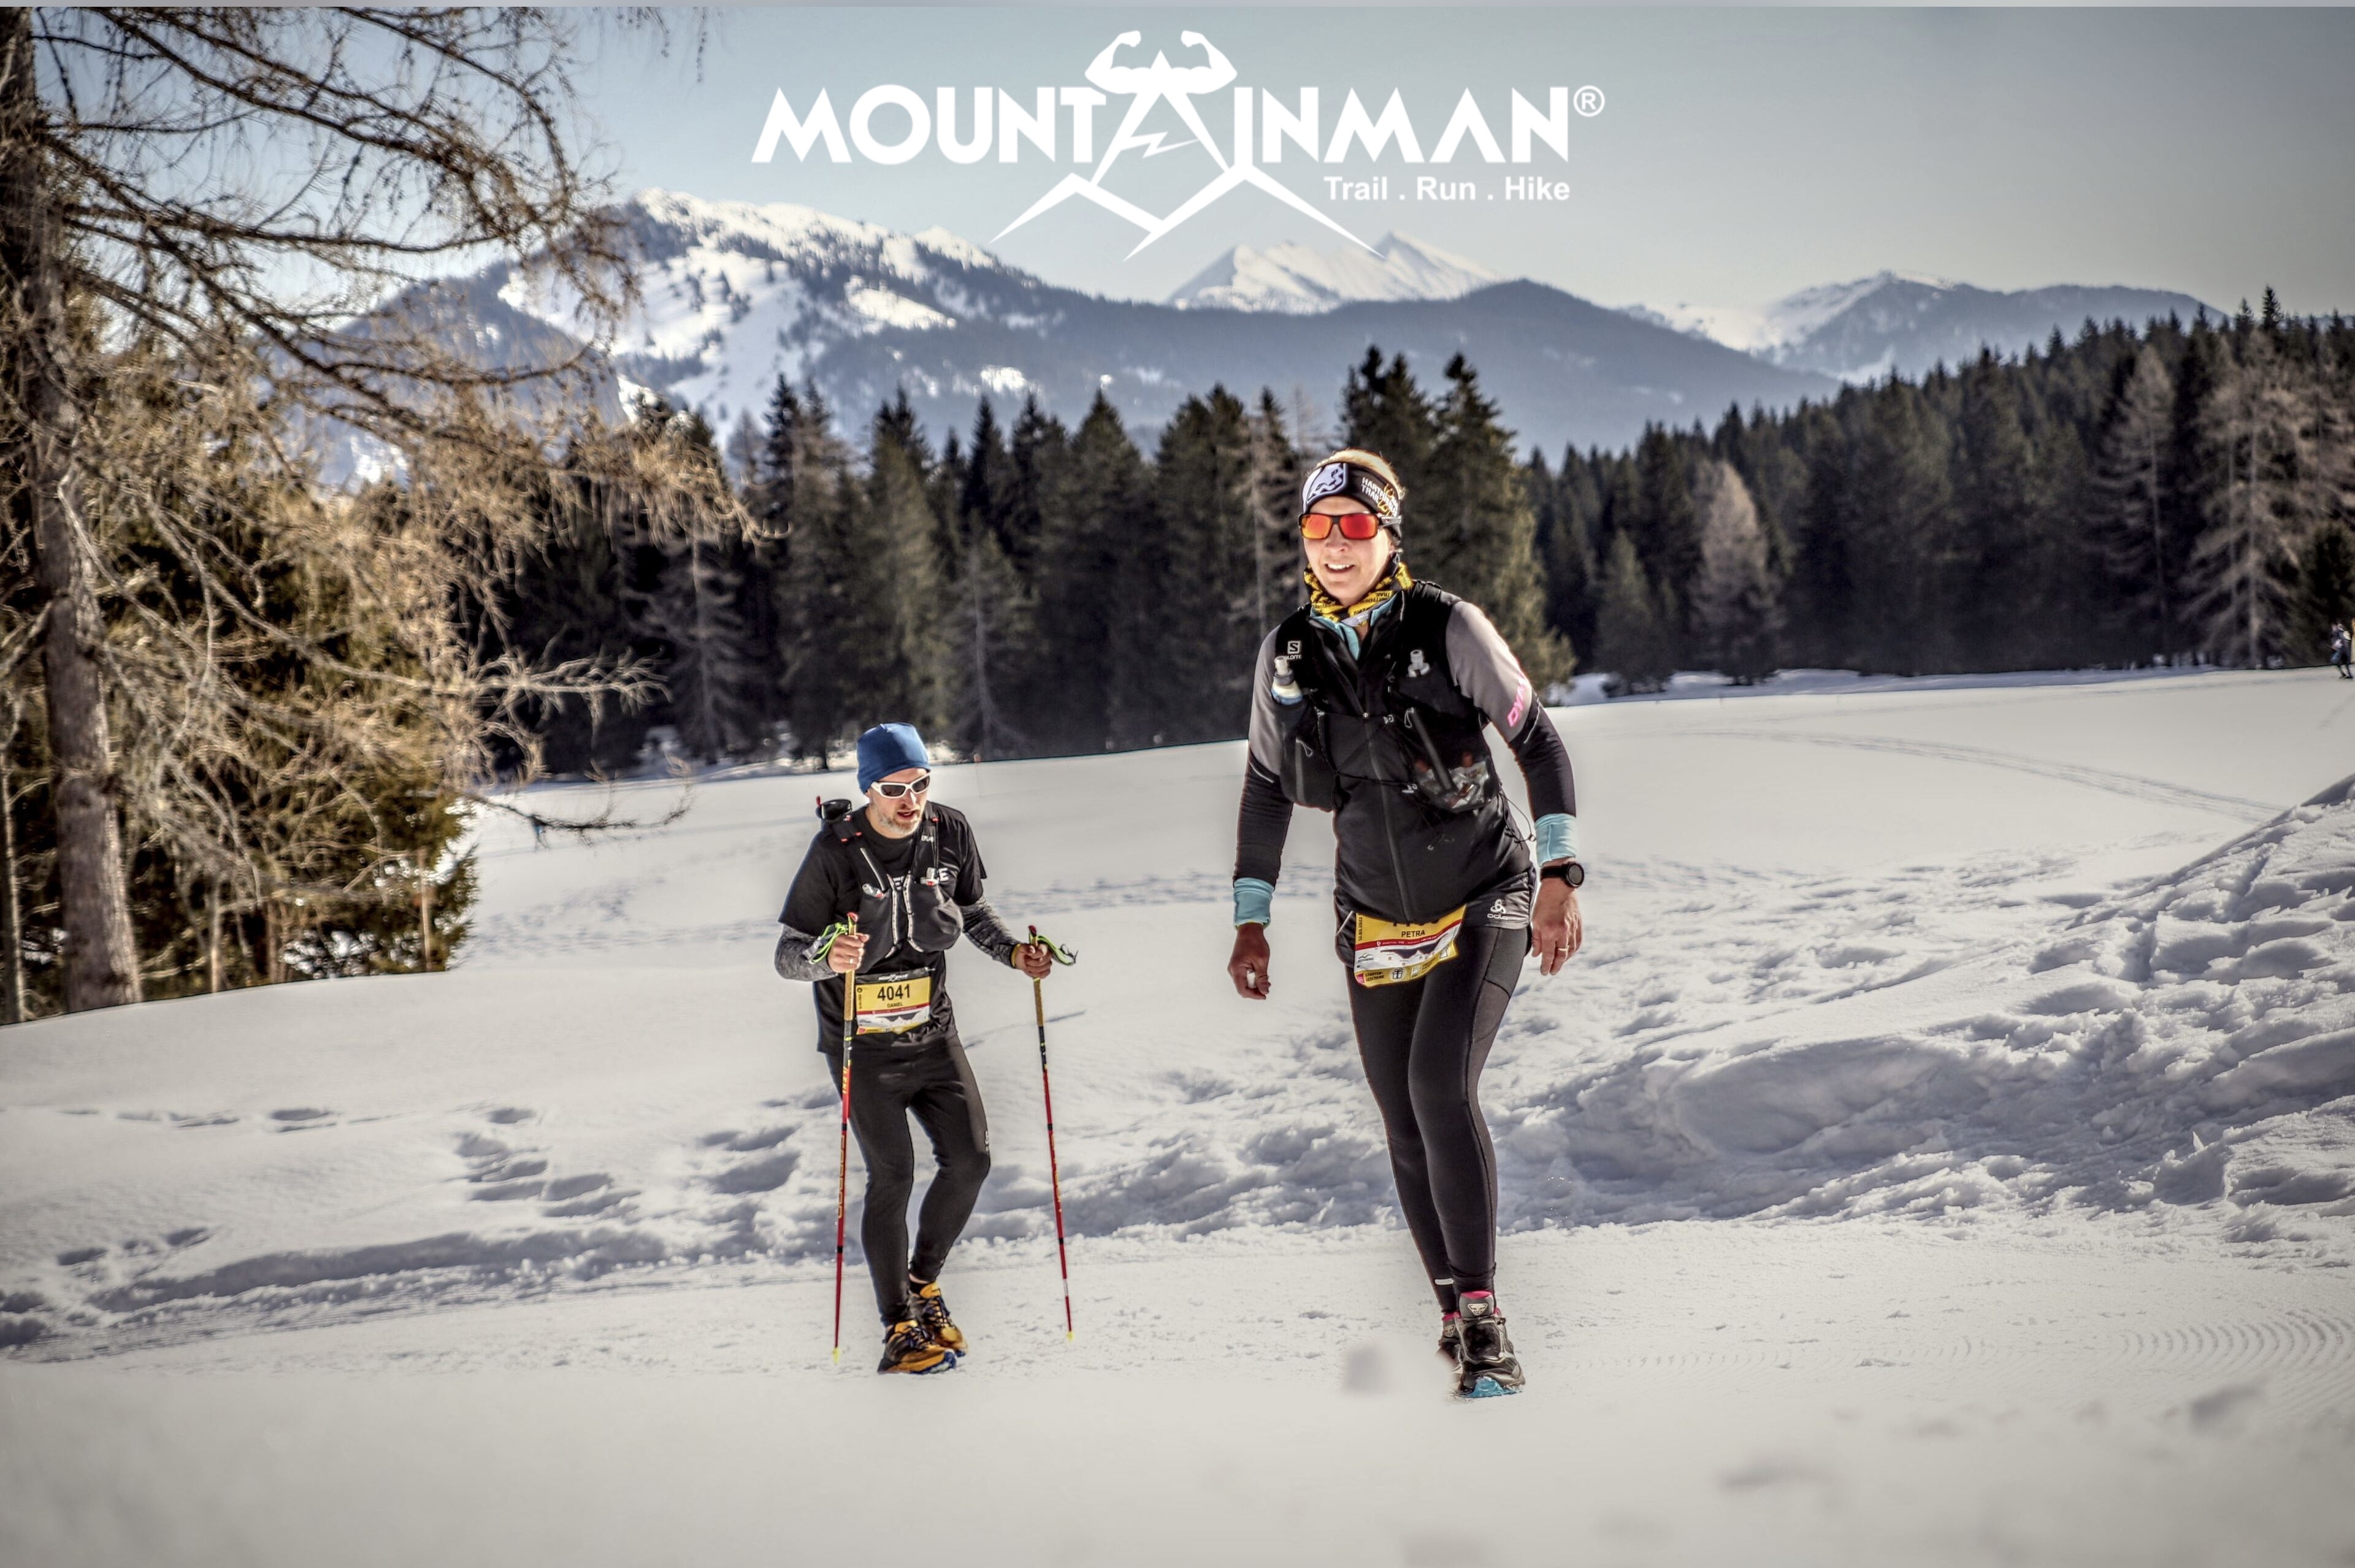 2 Teilnehmer:innen bei der Veranstaltung "Mountainman" in der Winterlandschaft